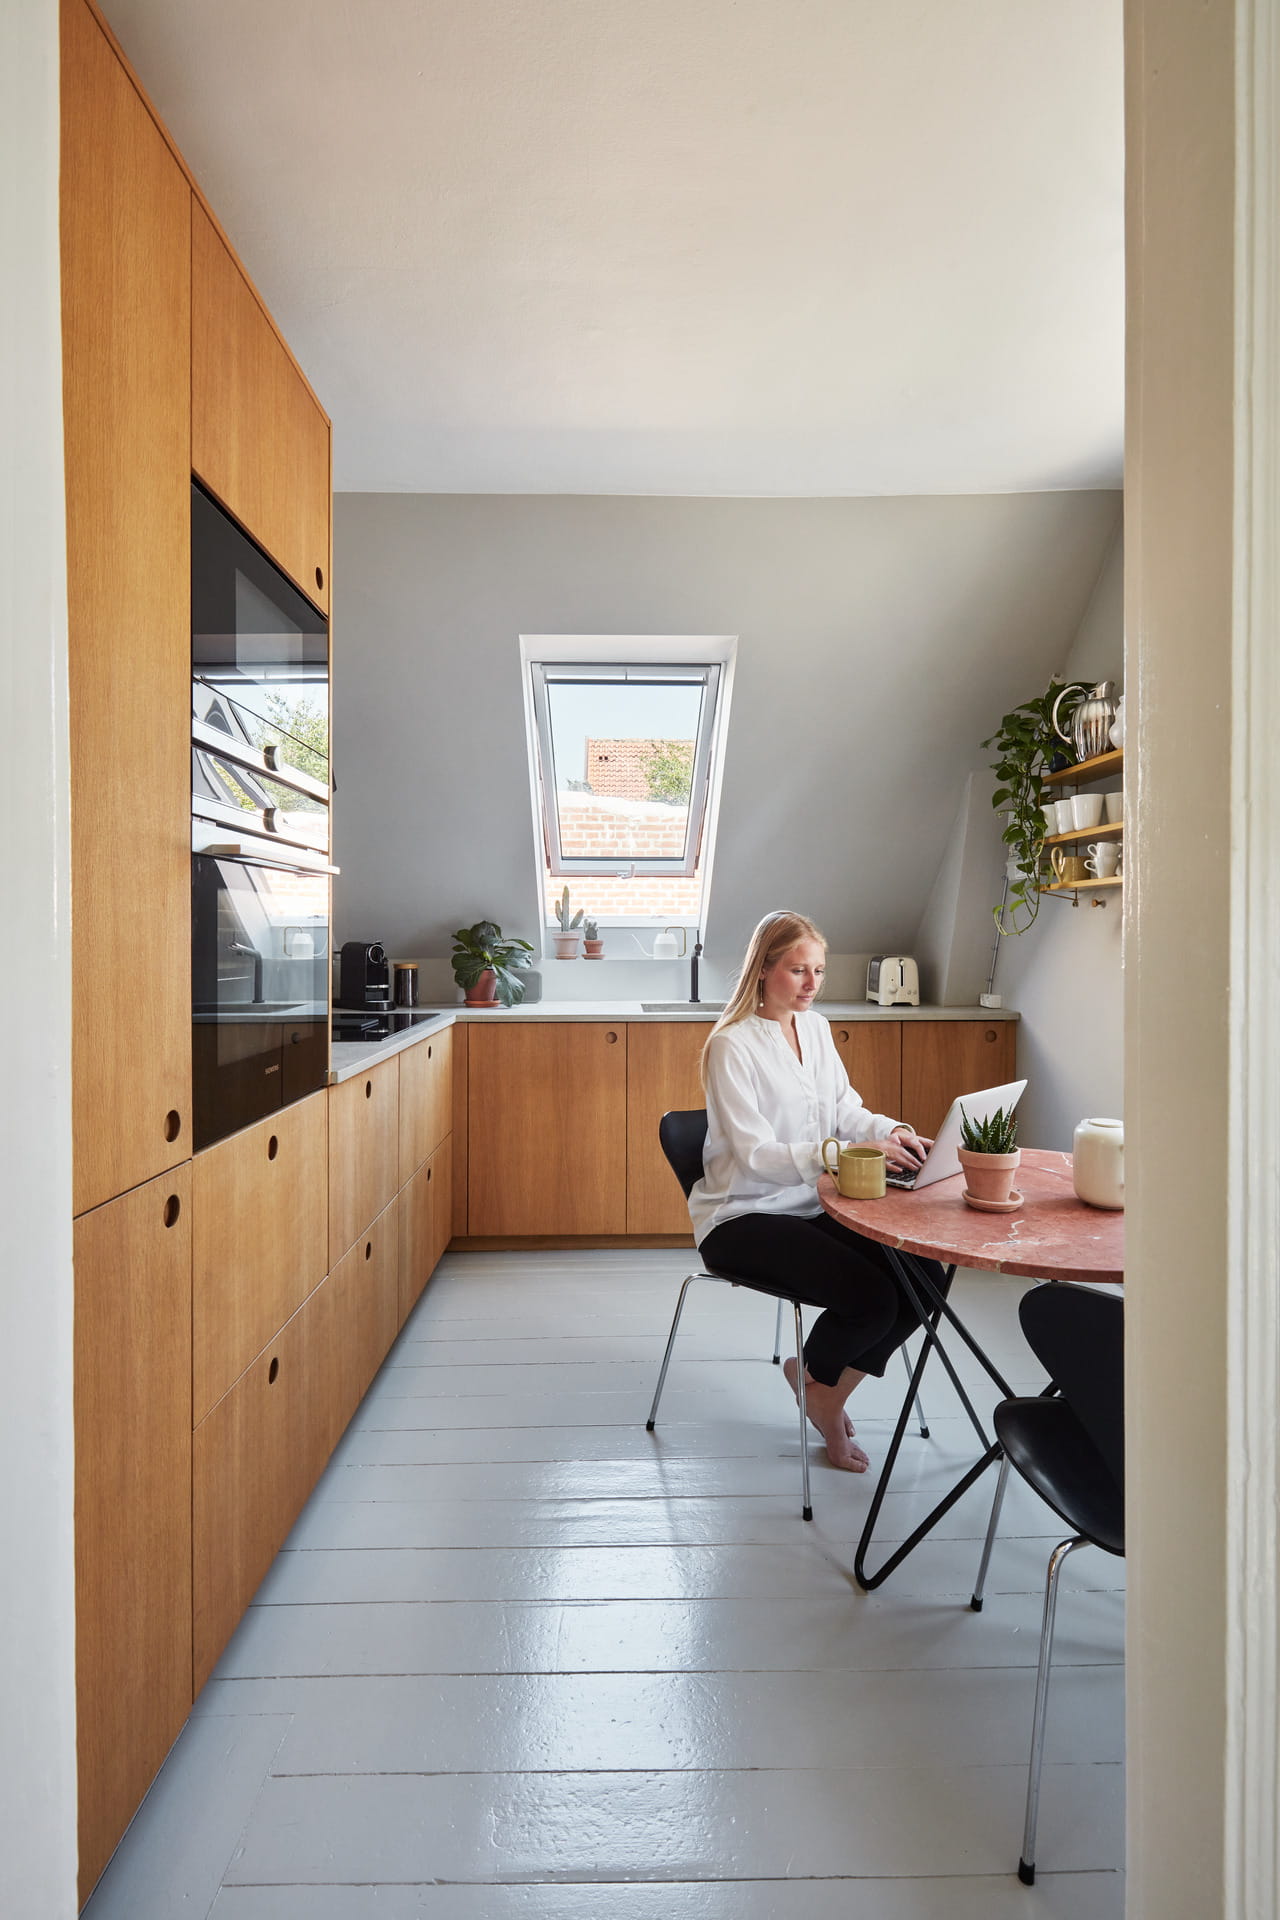 Moderne Küche mit hölzernen Schränken, VELUX-Fenster und Person am Tisch mit Laptop.